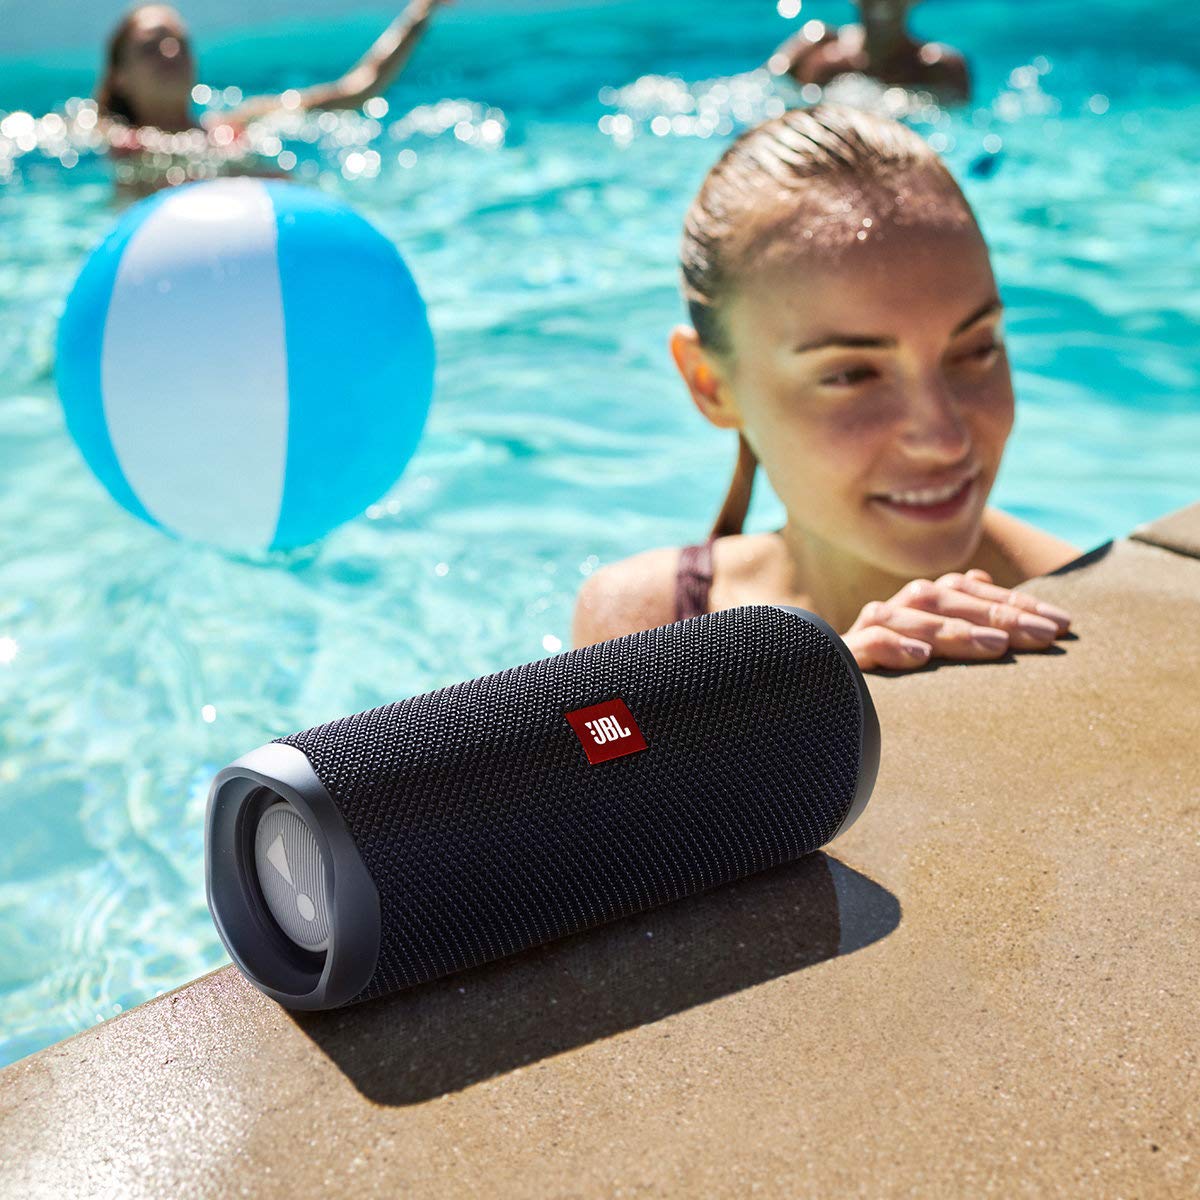 JBL Flip 5 Waterproof Portable Bluetooth Speaker - Black (Refurbished)